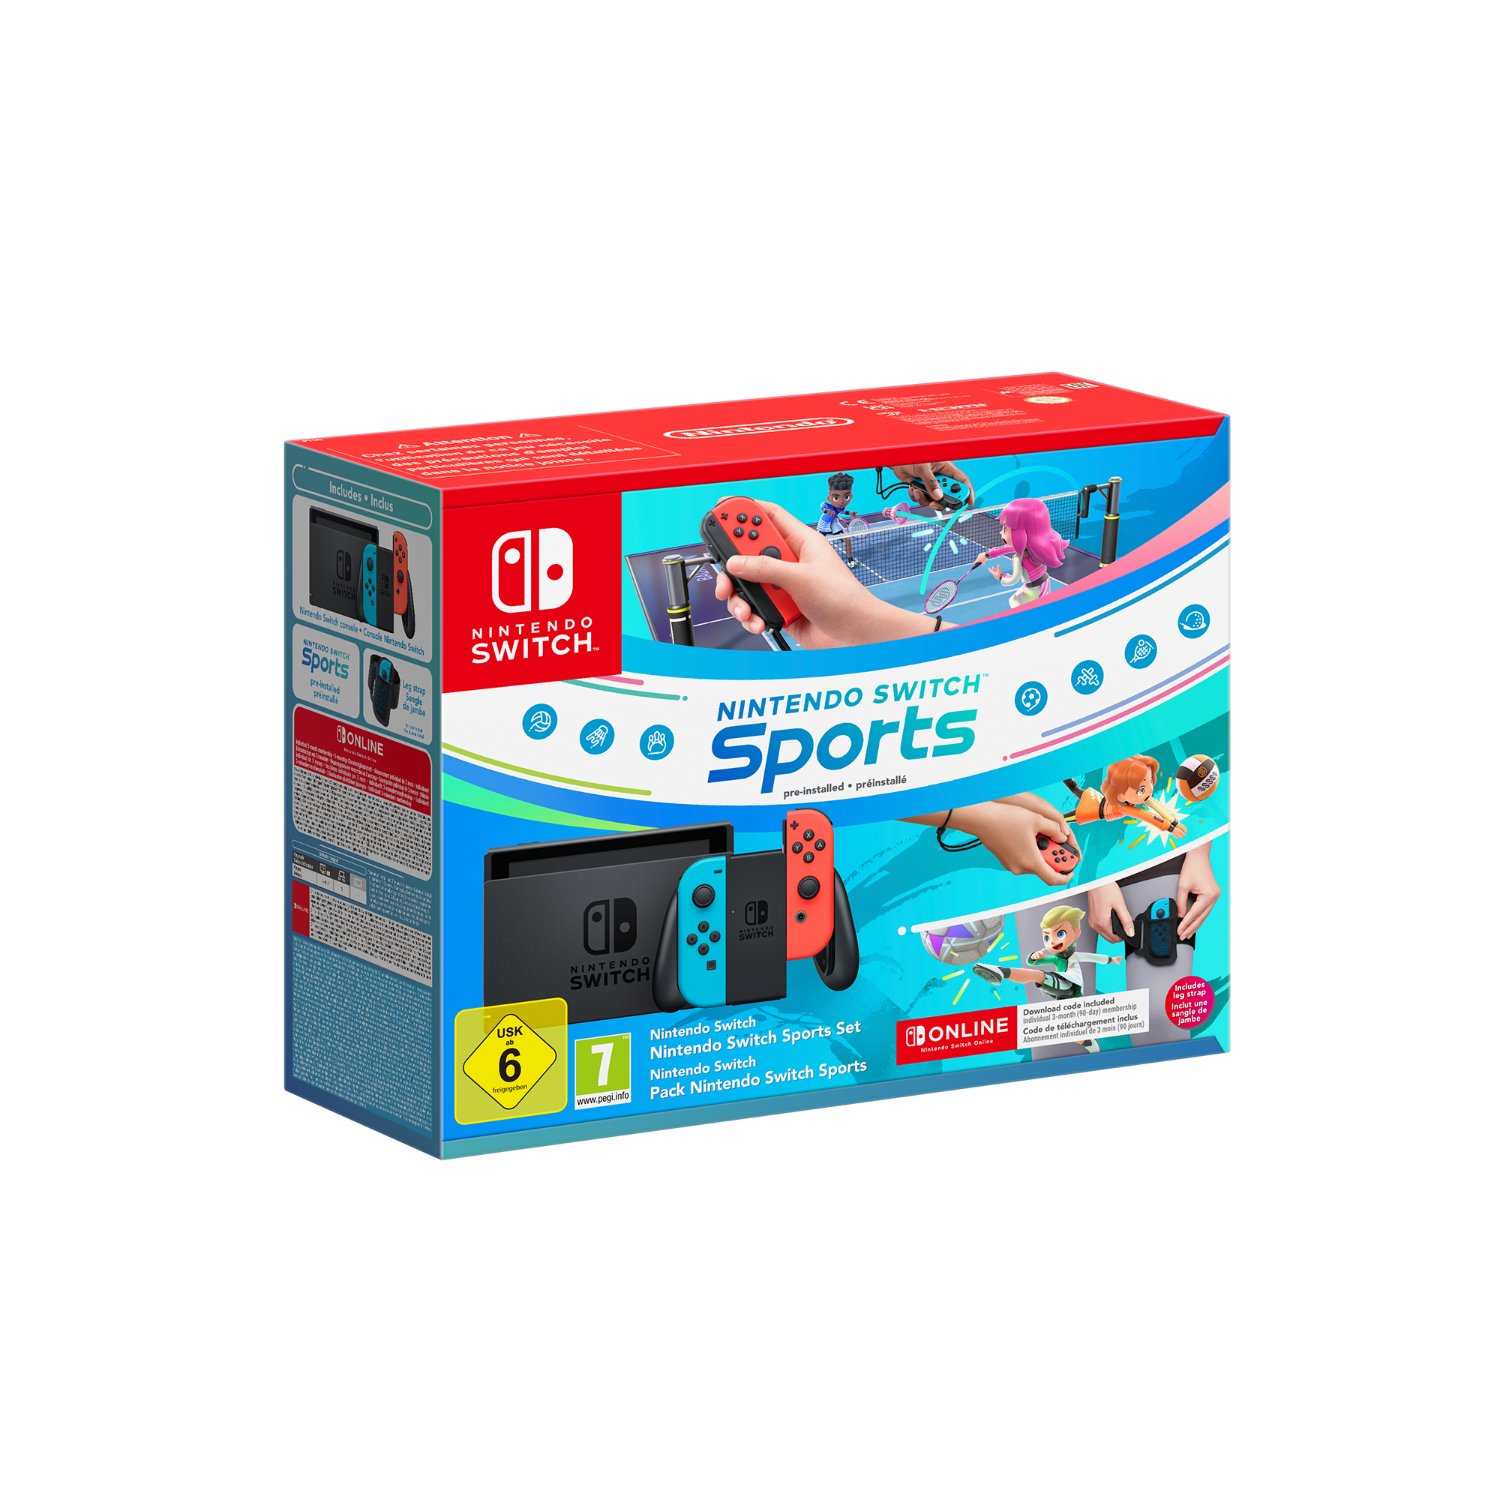 Aanbieding Nintendo Switch Rood En Blauw - Sports + 3 Maanden Nintendo Online - 0045496453657